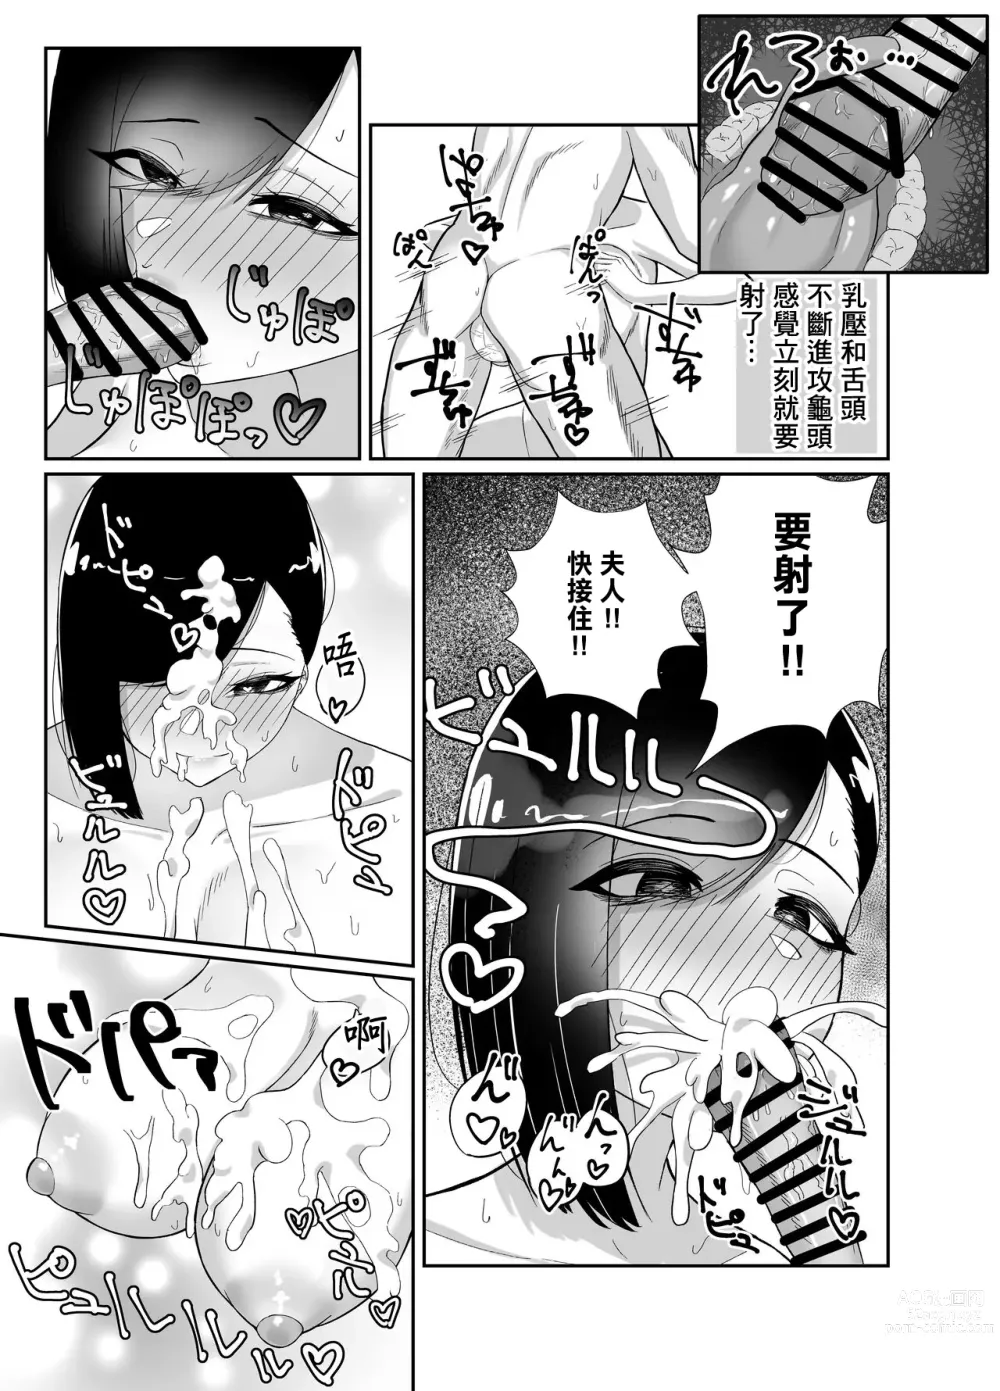 Page 25 of doujinshi 向在荒郊野嶺遇到的不知人世險惡的巨乳人妻灌輸虛假禮節SEX的故事